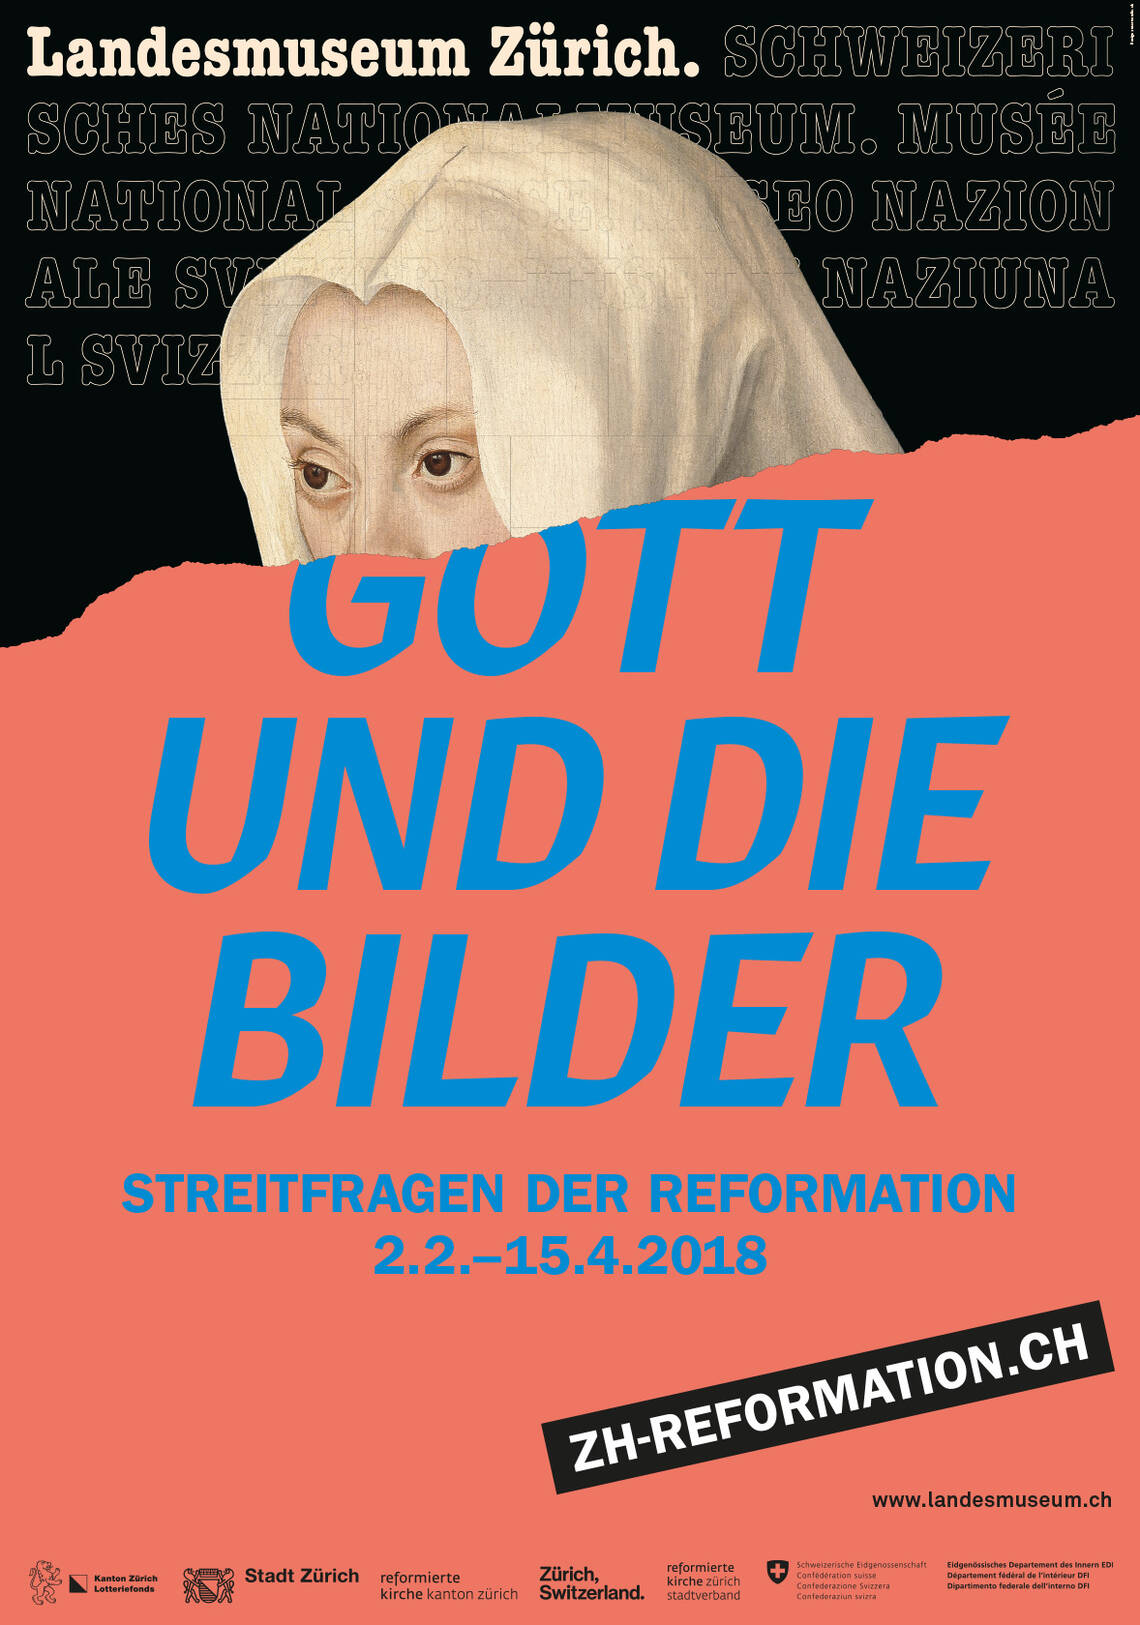 Affiche de l'exposition "Questions litigieuses de la Réforme".